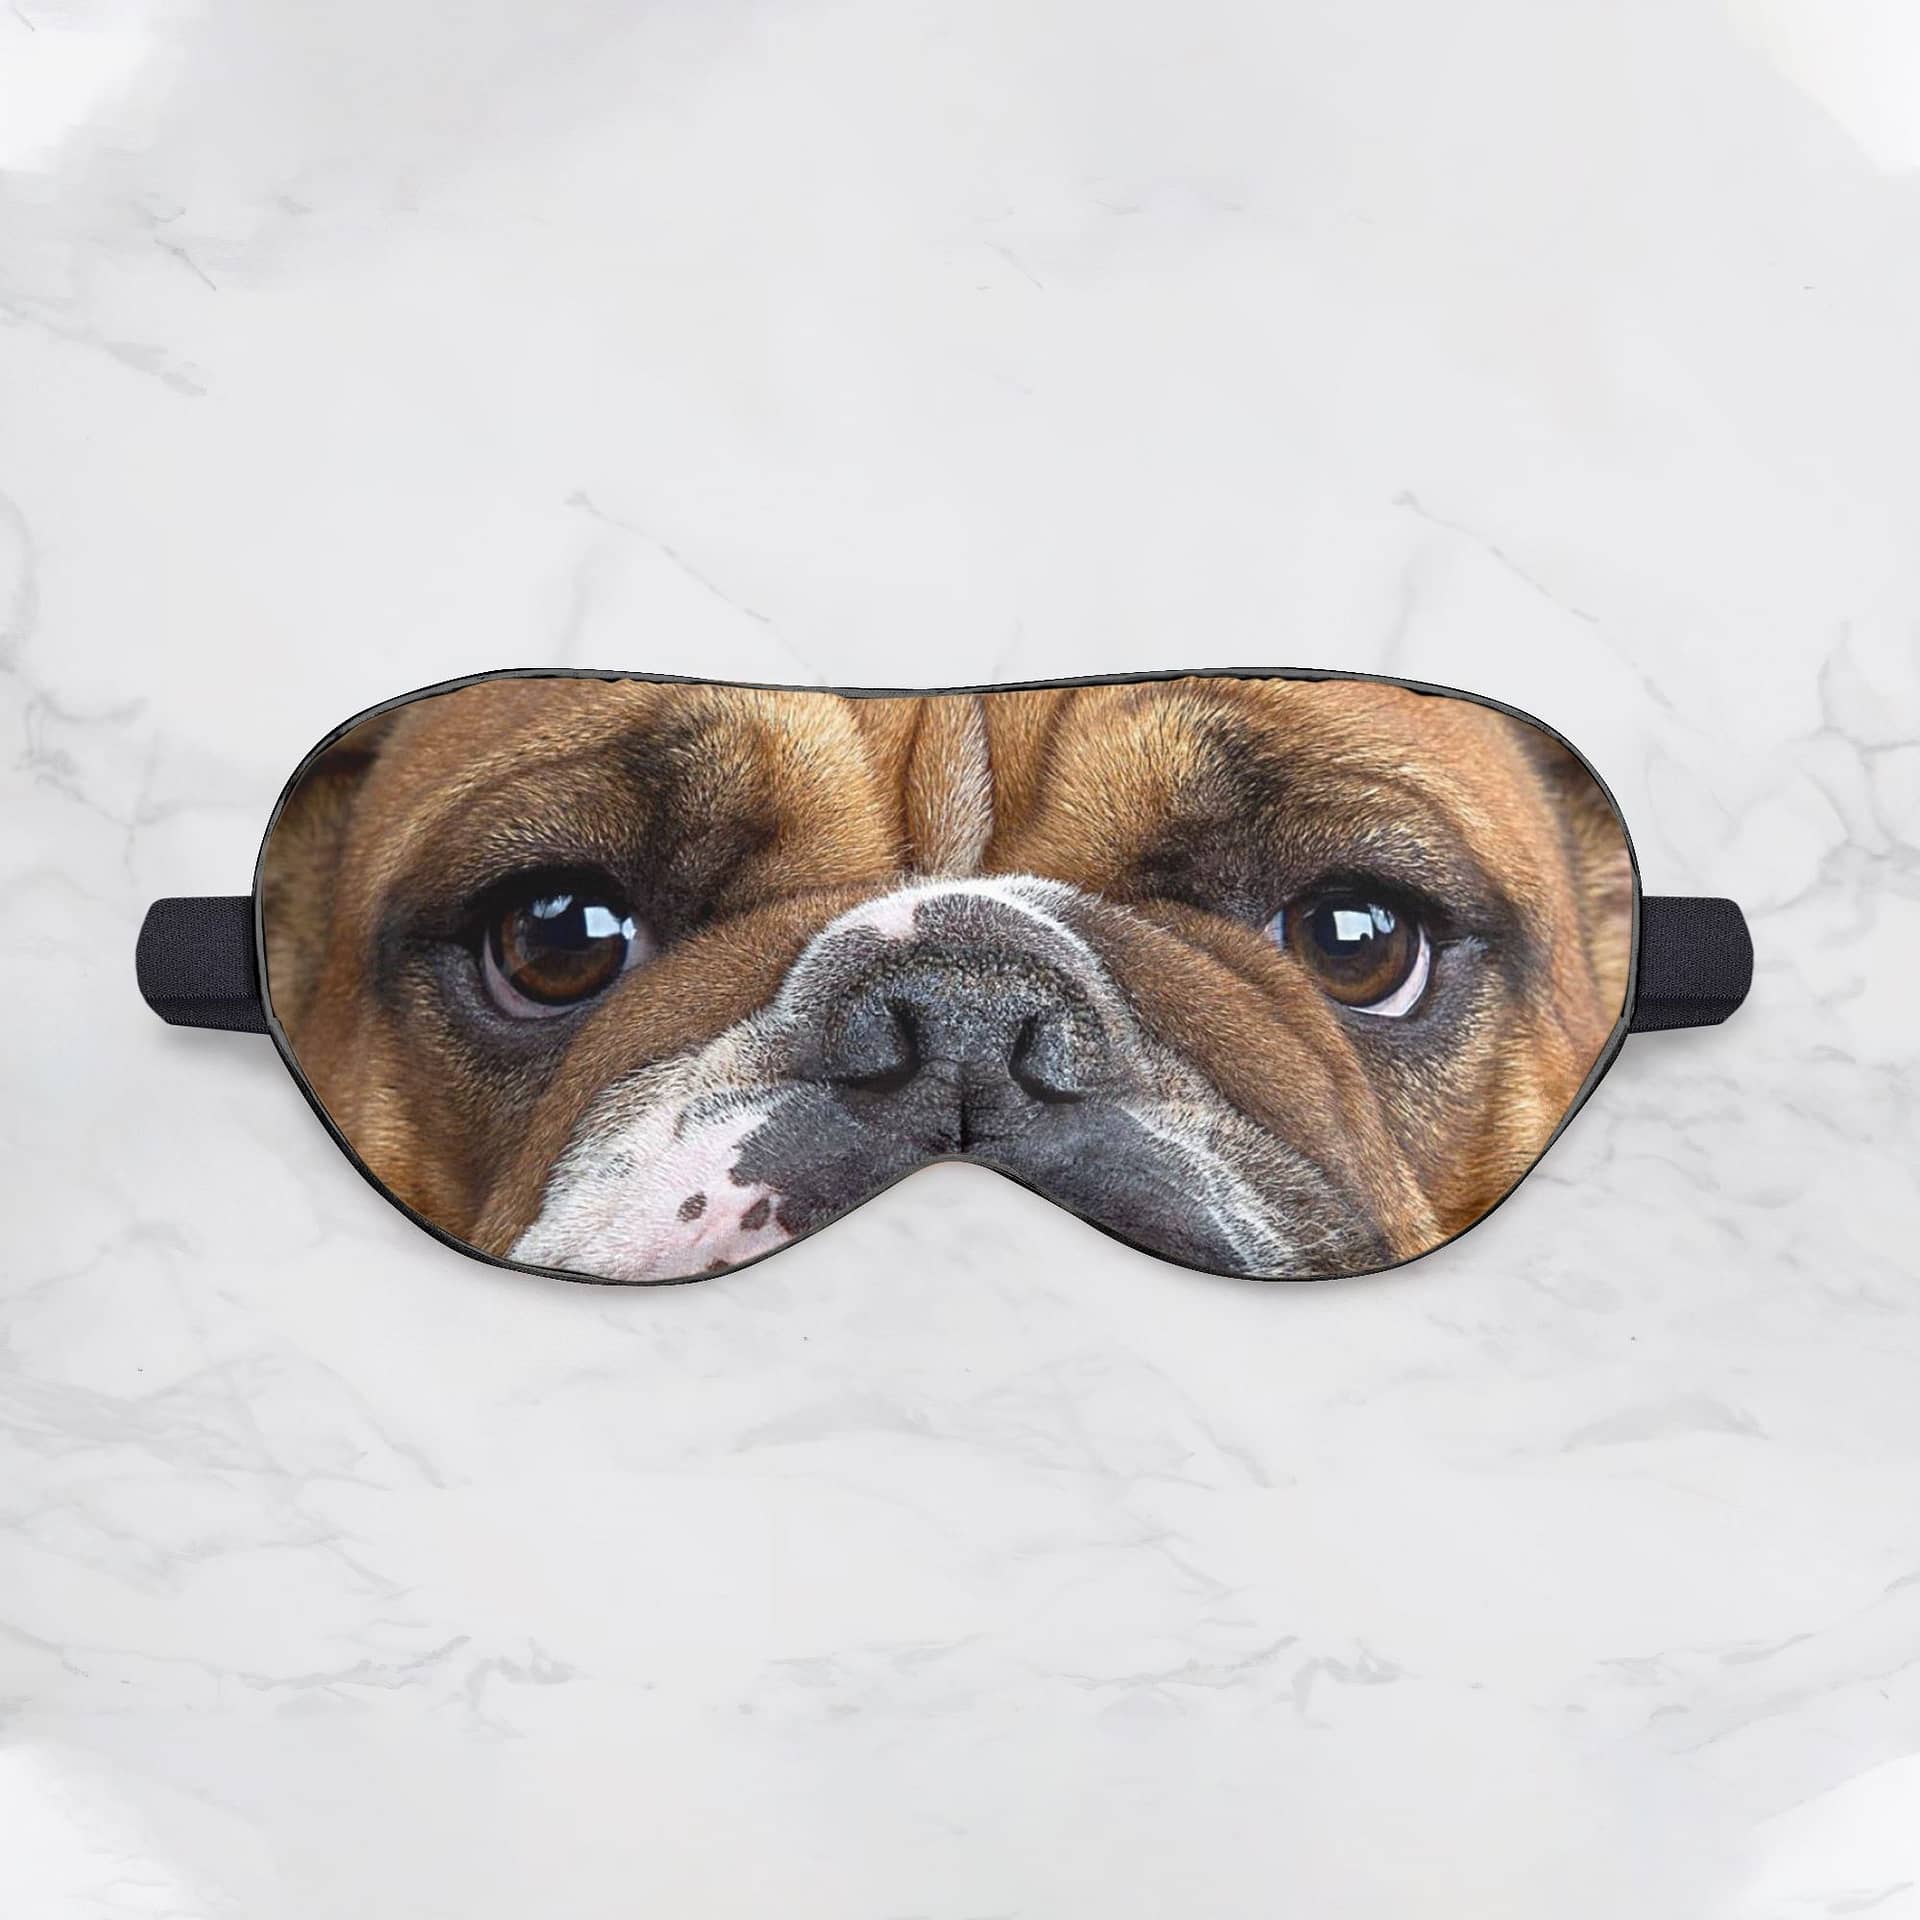 Inktee Store - Bulldog Sleep Mask Image